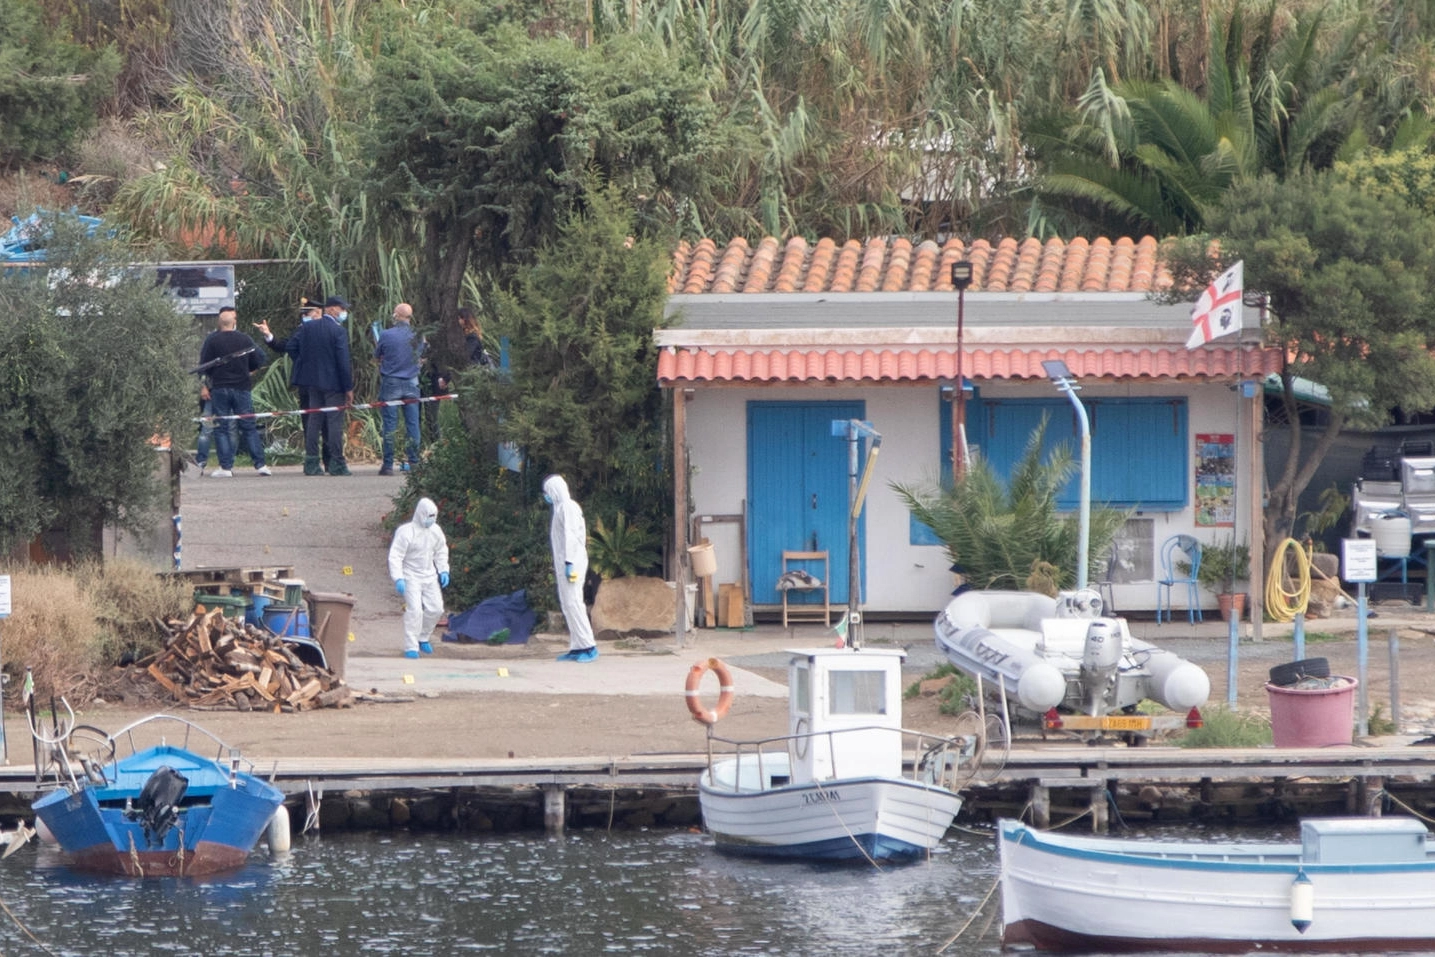 Investigatori sul luogo dell'assassinio a Porto Budello